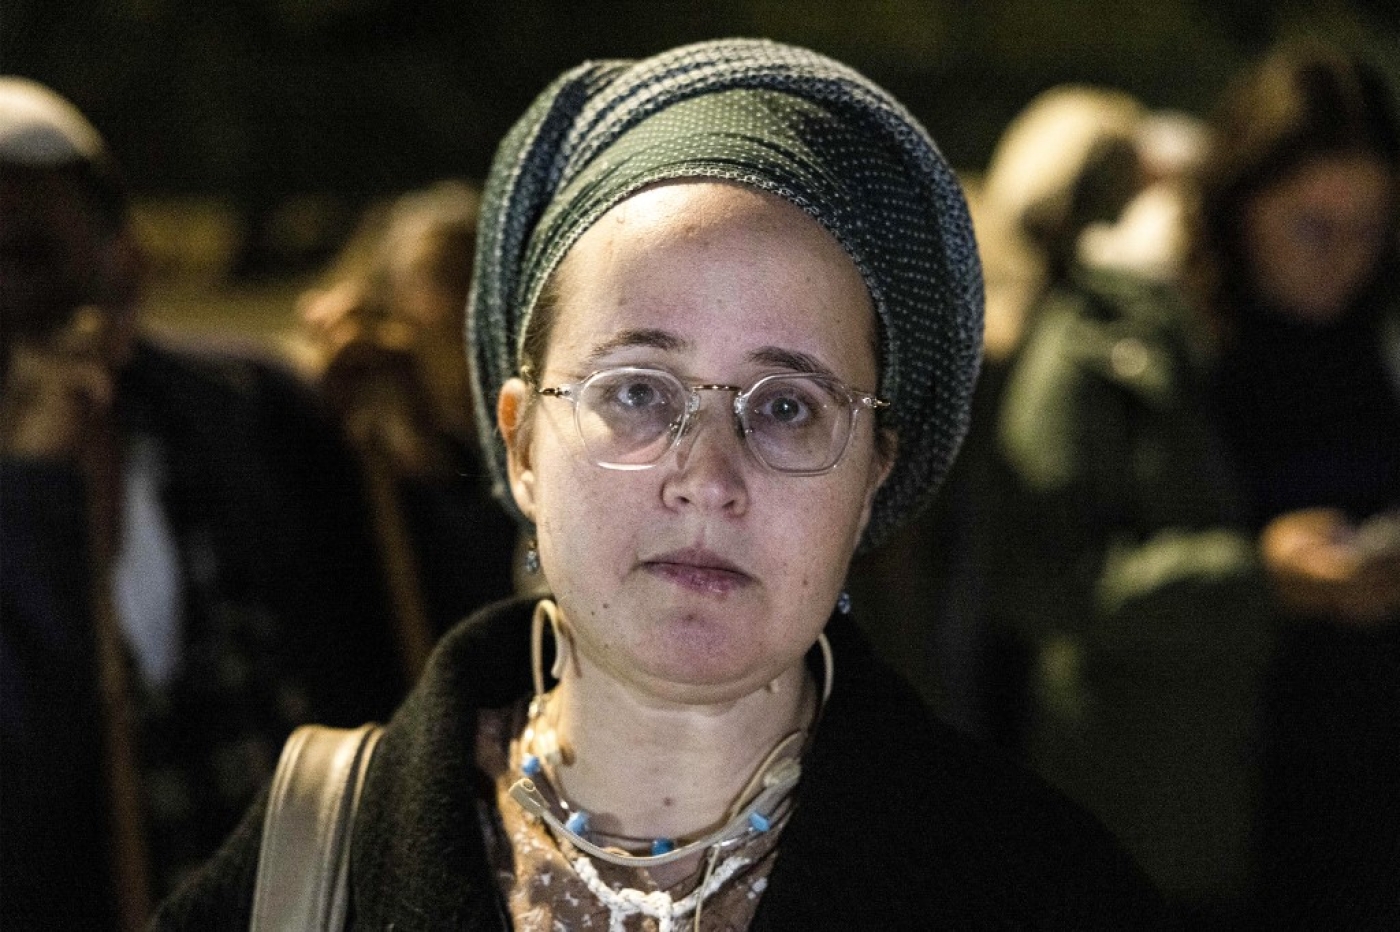 Nehama Teena, Juive orthodoxe religieuse, proteste avec ses partisans contre le rabbin Zvi Thau accusé de l’avoir violée, lors d’une manifestation devant le siège de la Knesset (parlement israélien) à Jérusalem, le 21 novembre 2022 (AFP/Menahem Kahana)